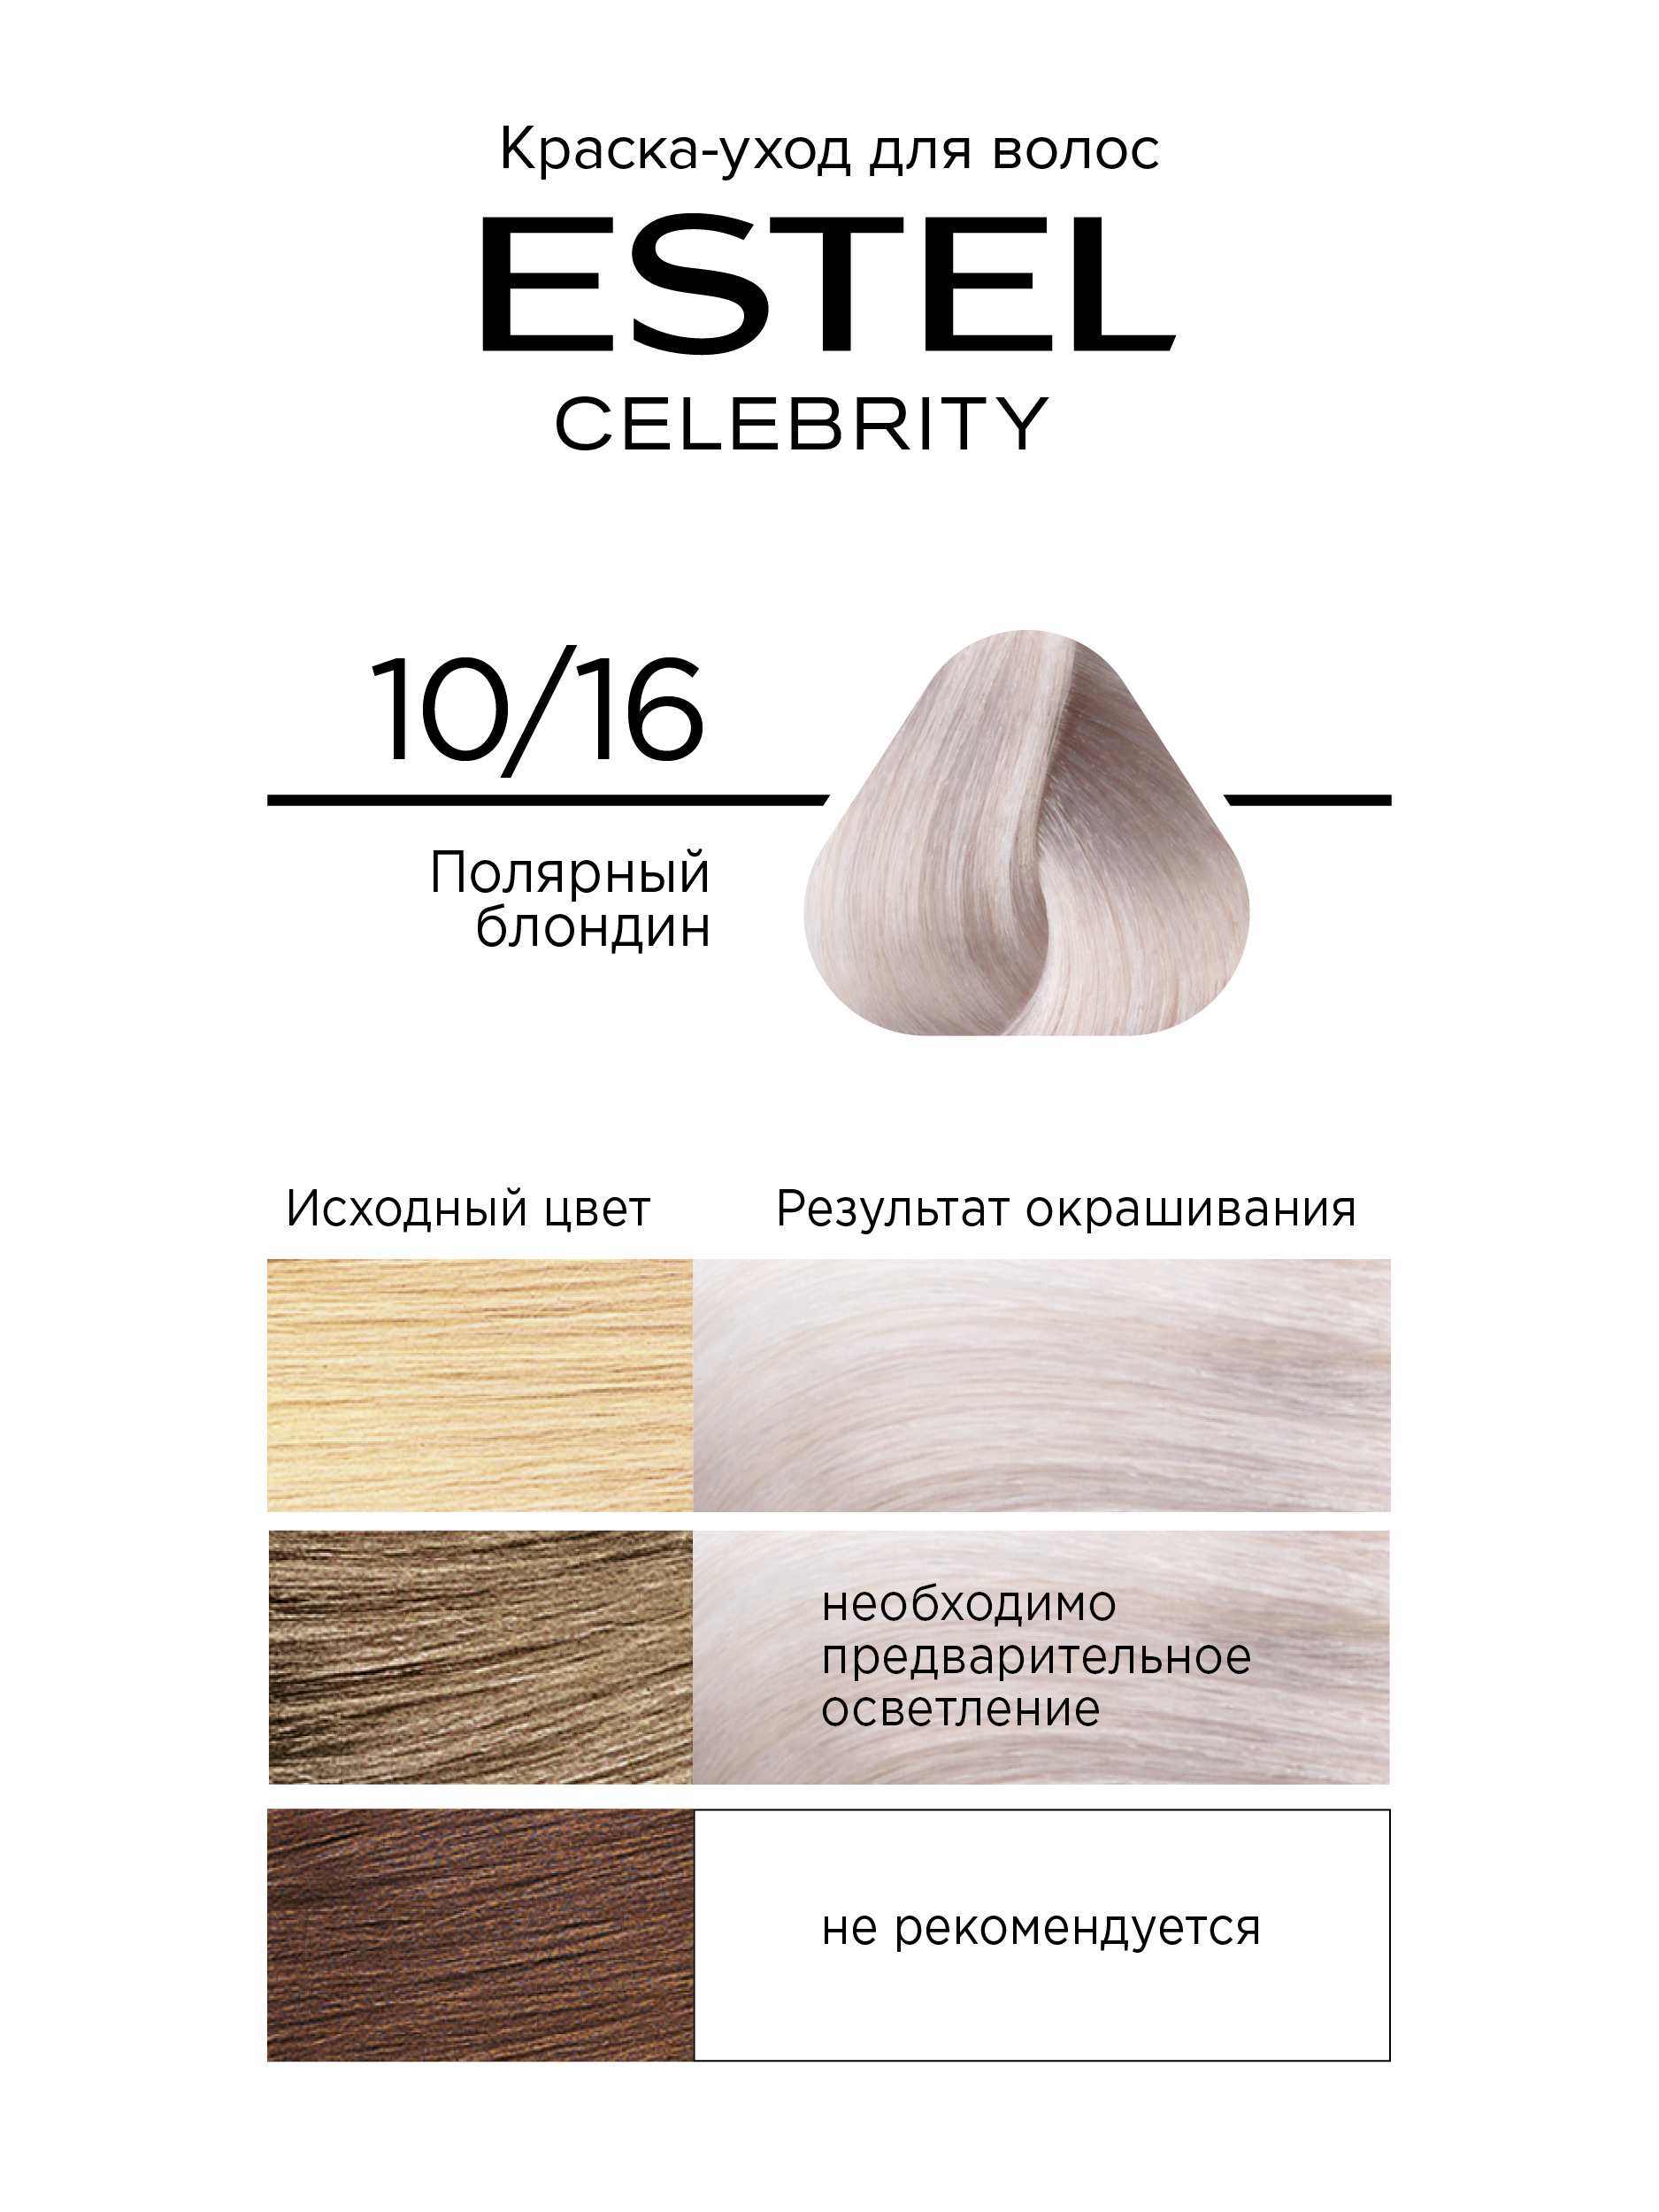 Краска для волос Estel Celebrity тон 10.16 полярный блондин